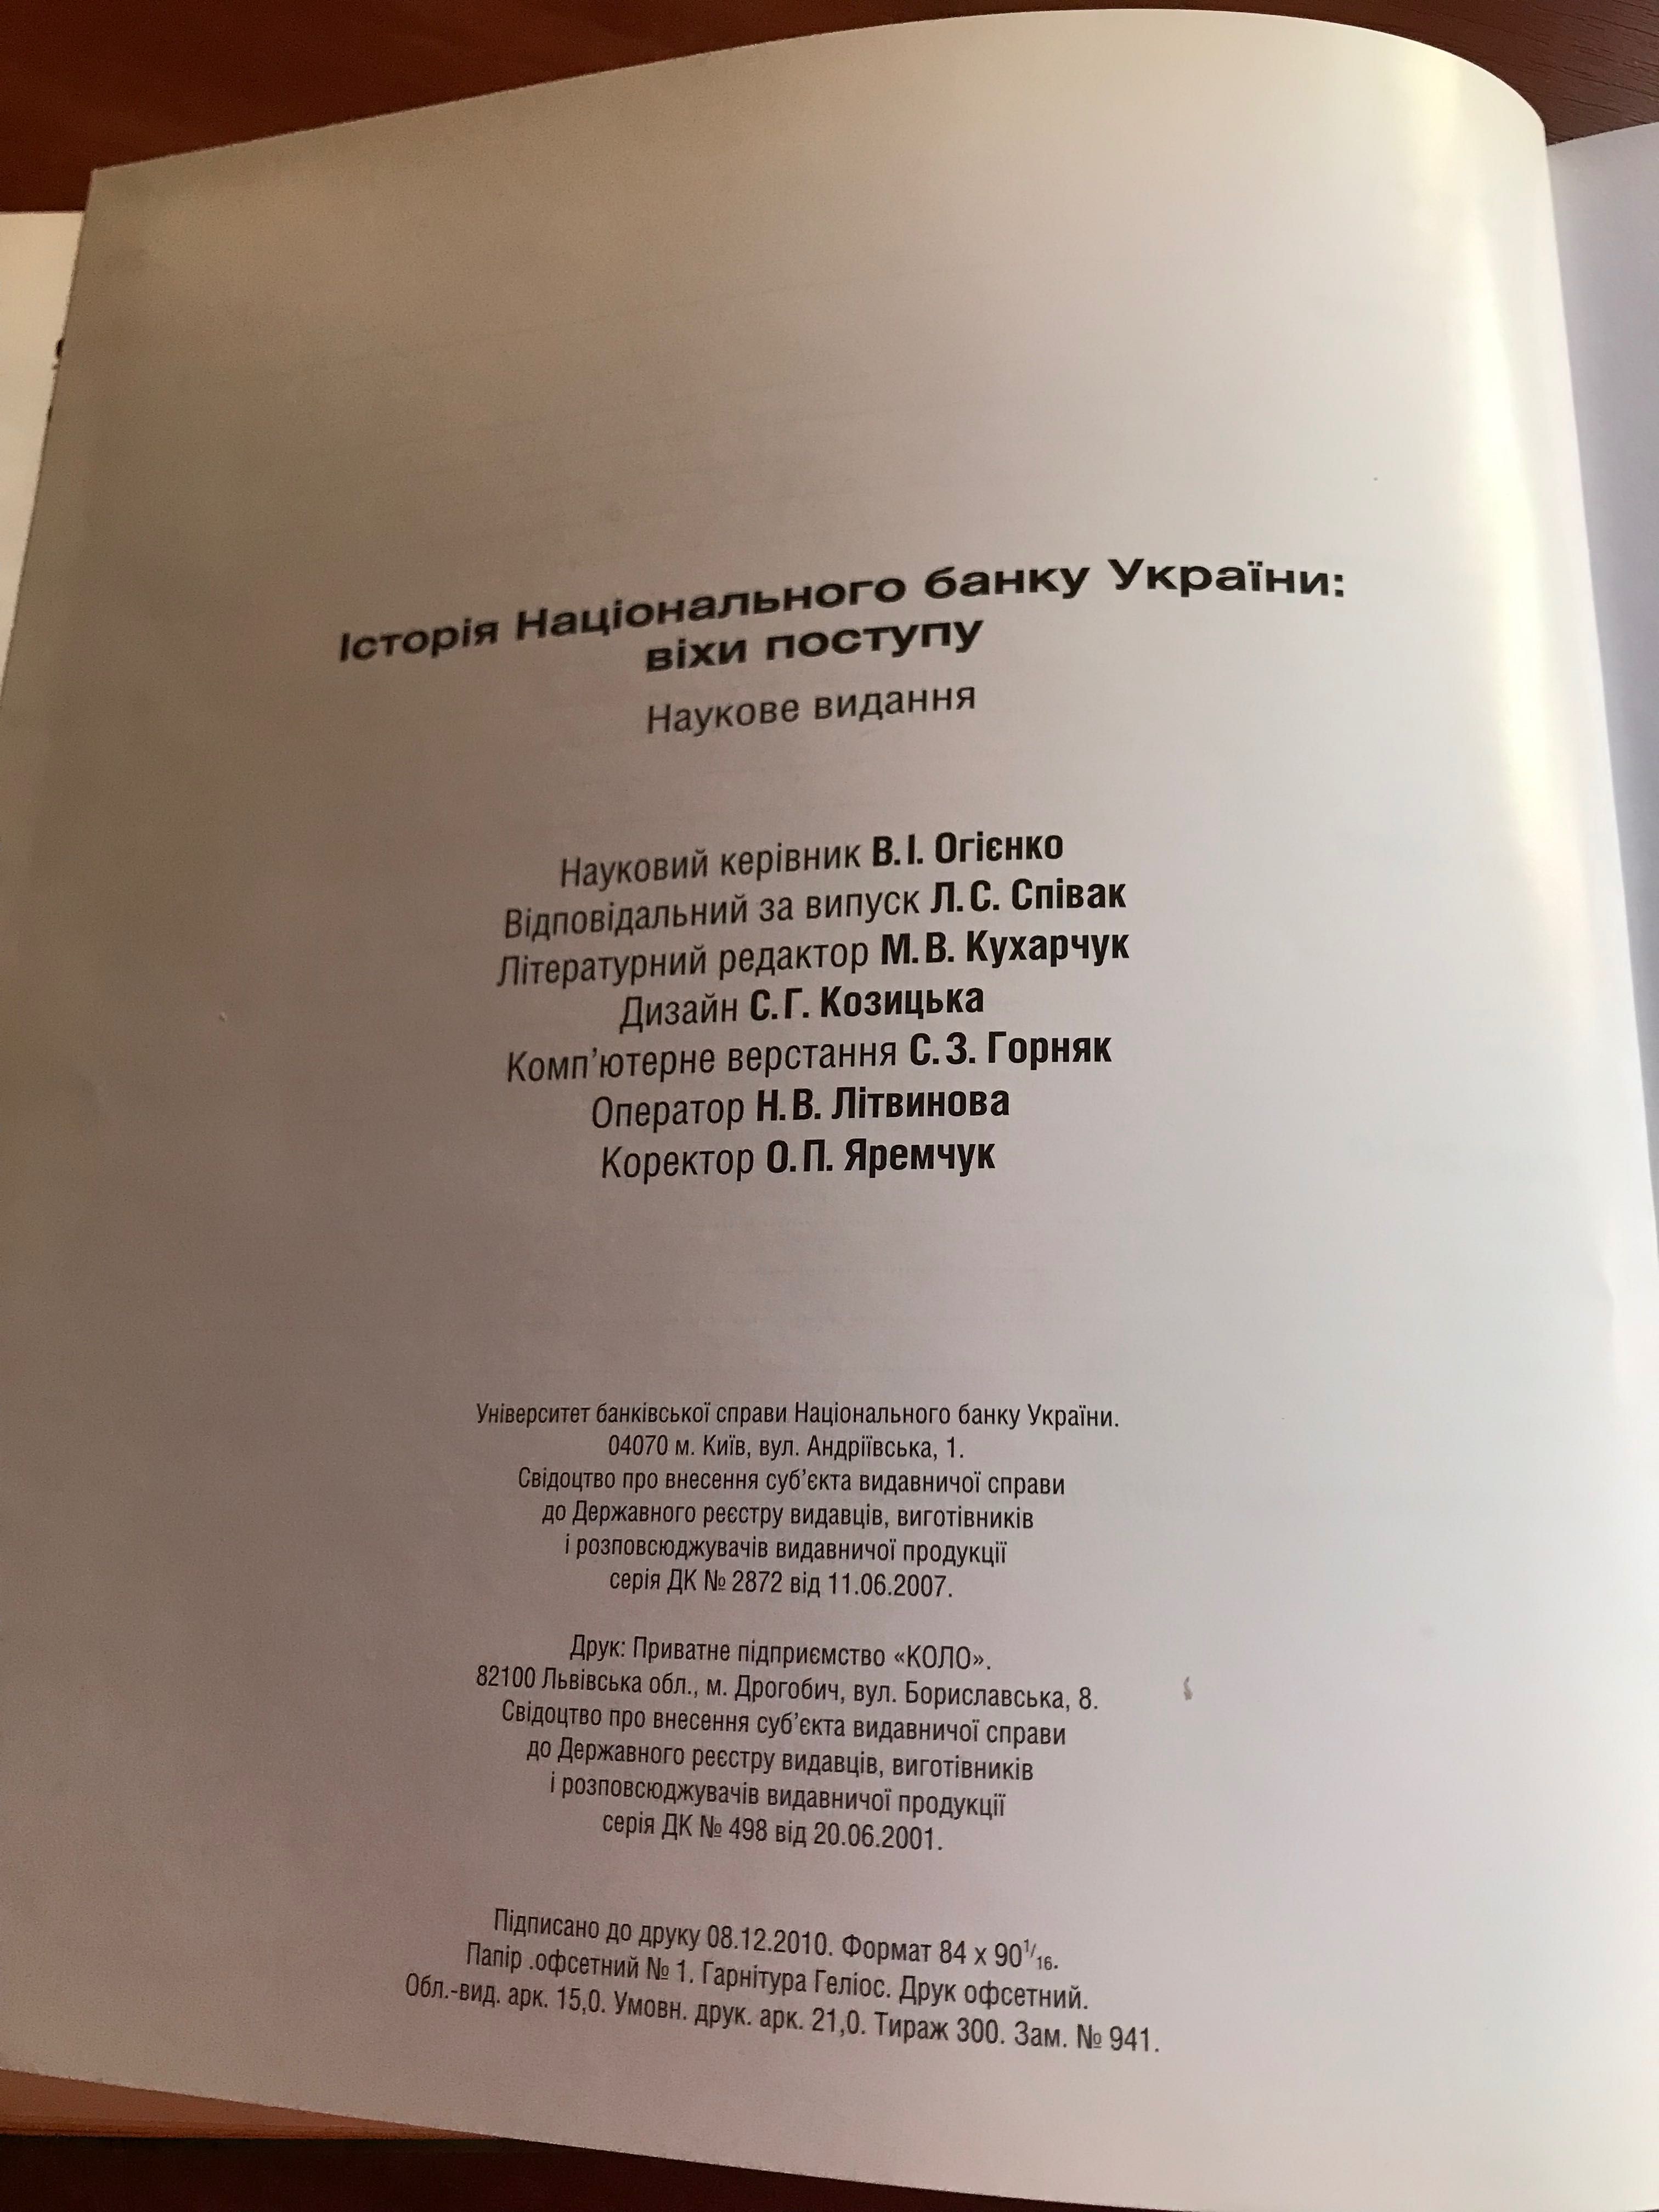 Історія Національного Банку України: віхи поступу. К. 2010.- 239 с.